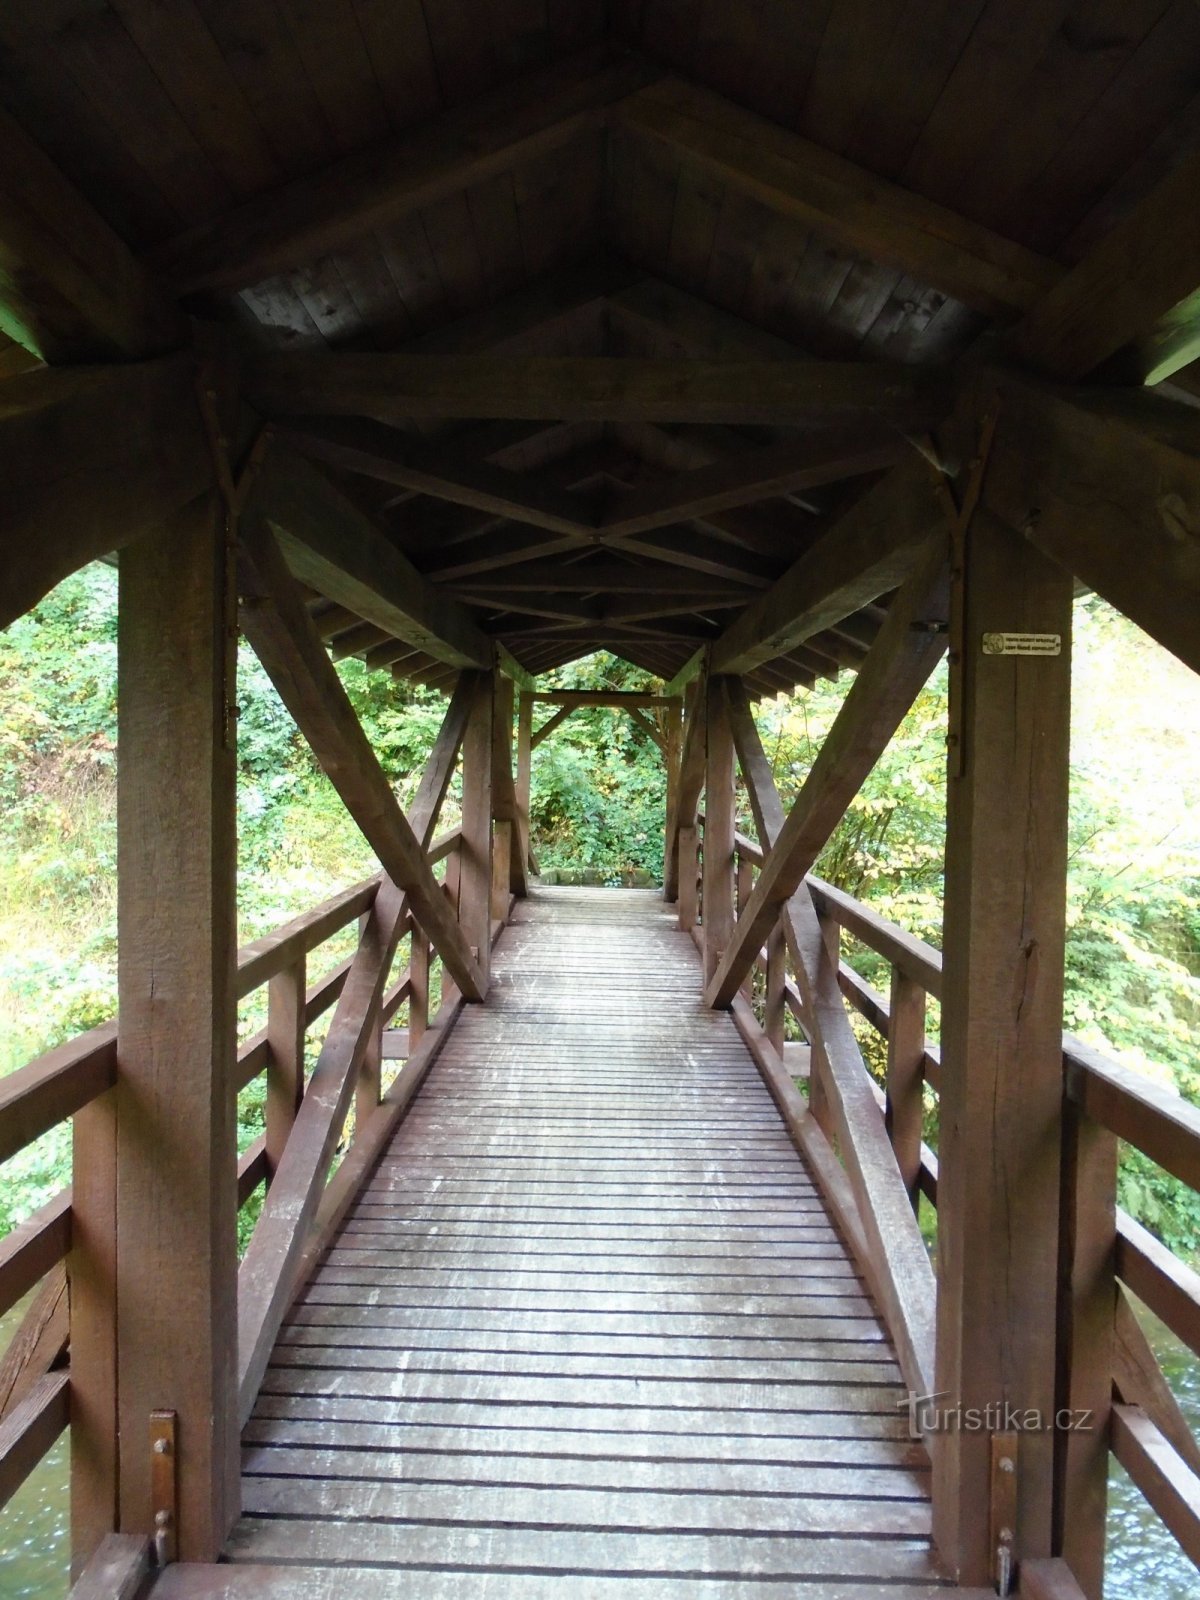 Boušín footbridge over the Úpu river